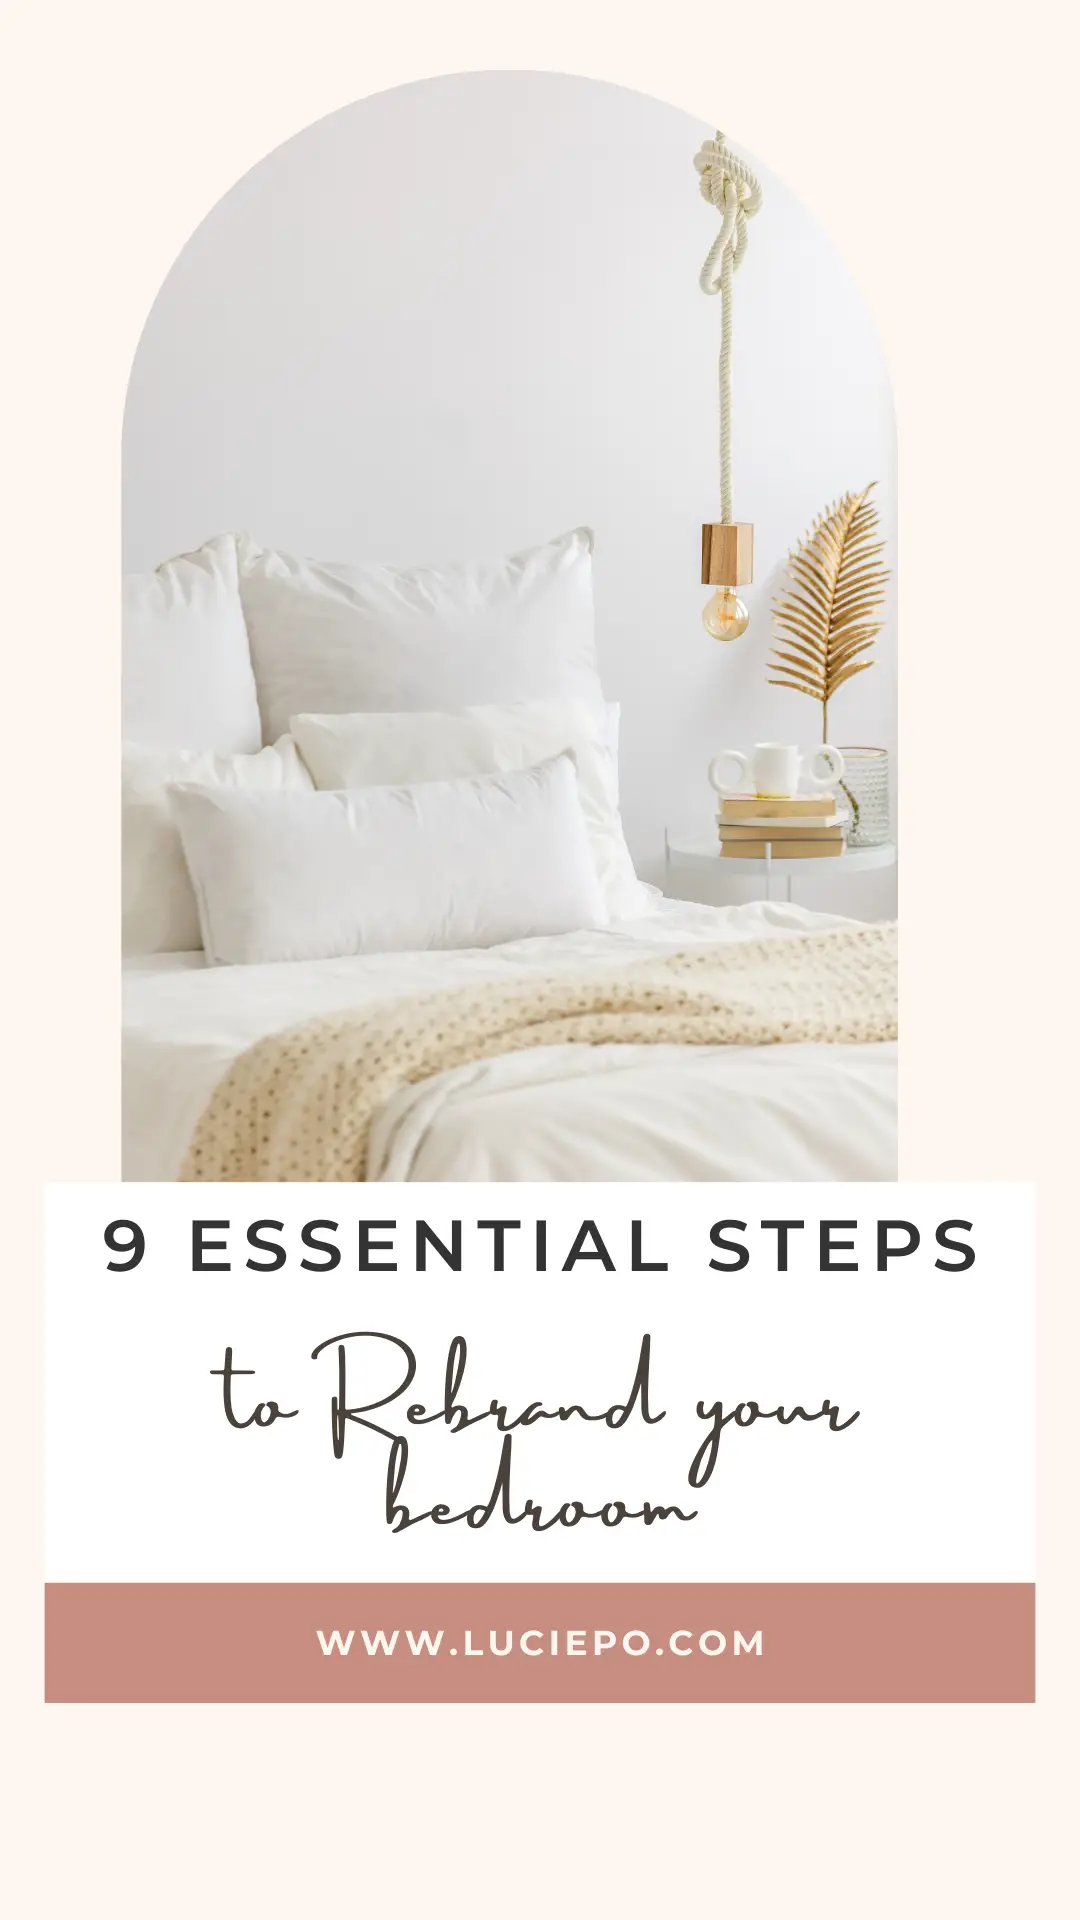 bedroom tips for better sleep